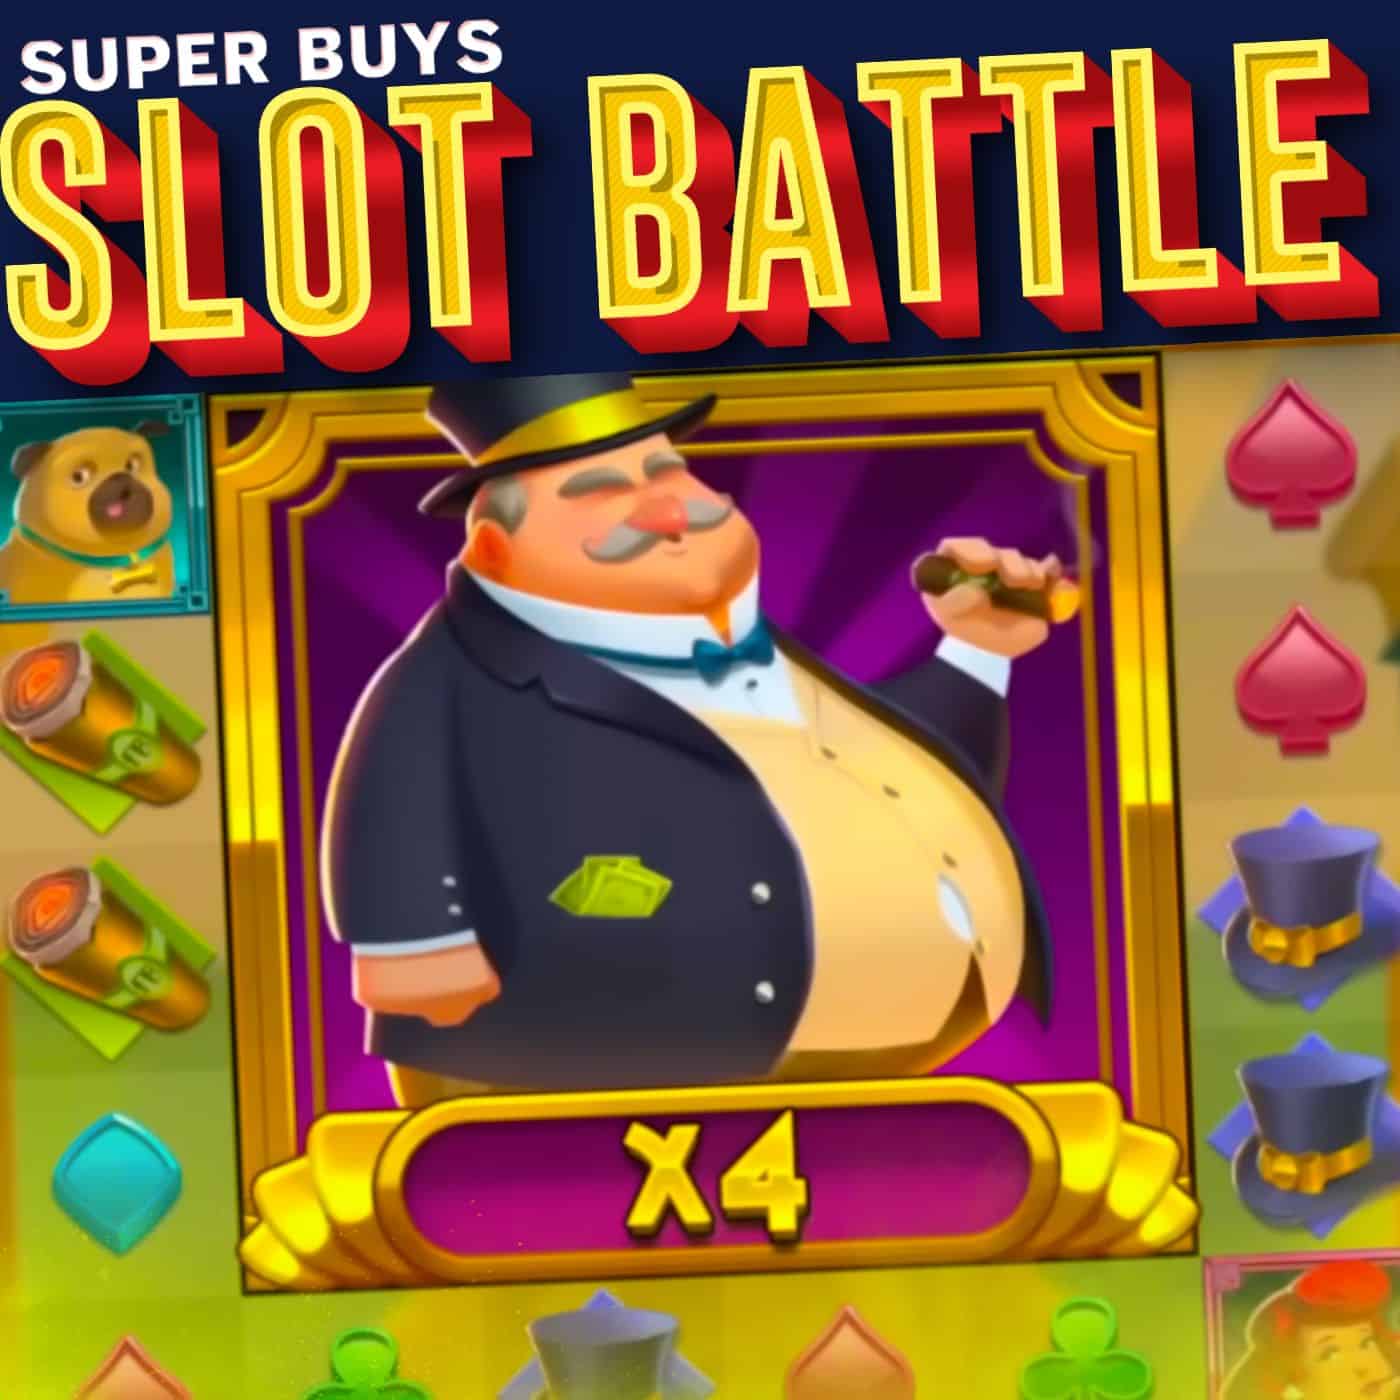 30 Super Bonus Buys! Sunday Slot Battle!